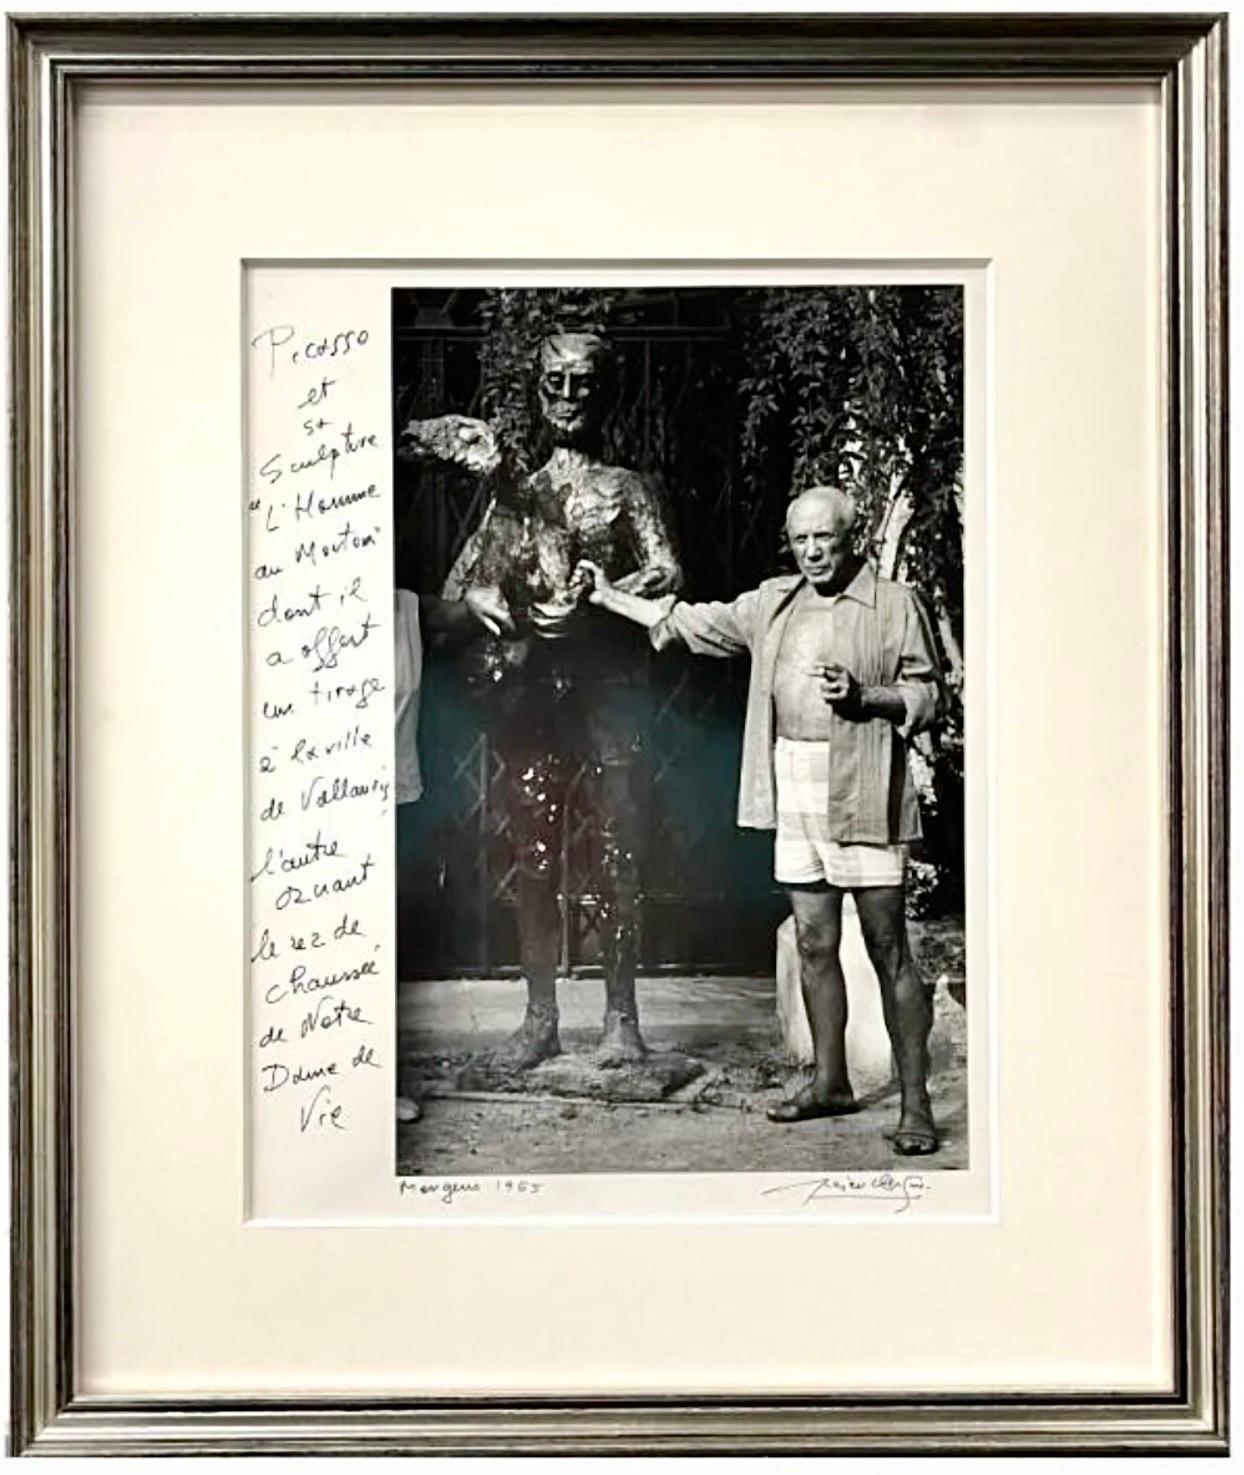 Lucien Clergue (FRANÇAIS, 1934 - 2014) 
Tirage photographique à la gélatine argentique représentant Pablo Picasso dans un jardin avec une grande sculpture en bronze. Mougins, 1965.
Signé à la main par l'artiste avec une description écrite à la main.